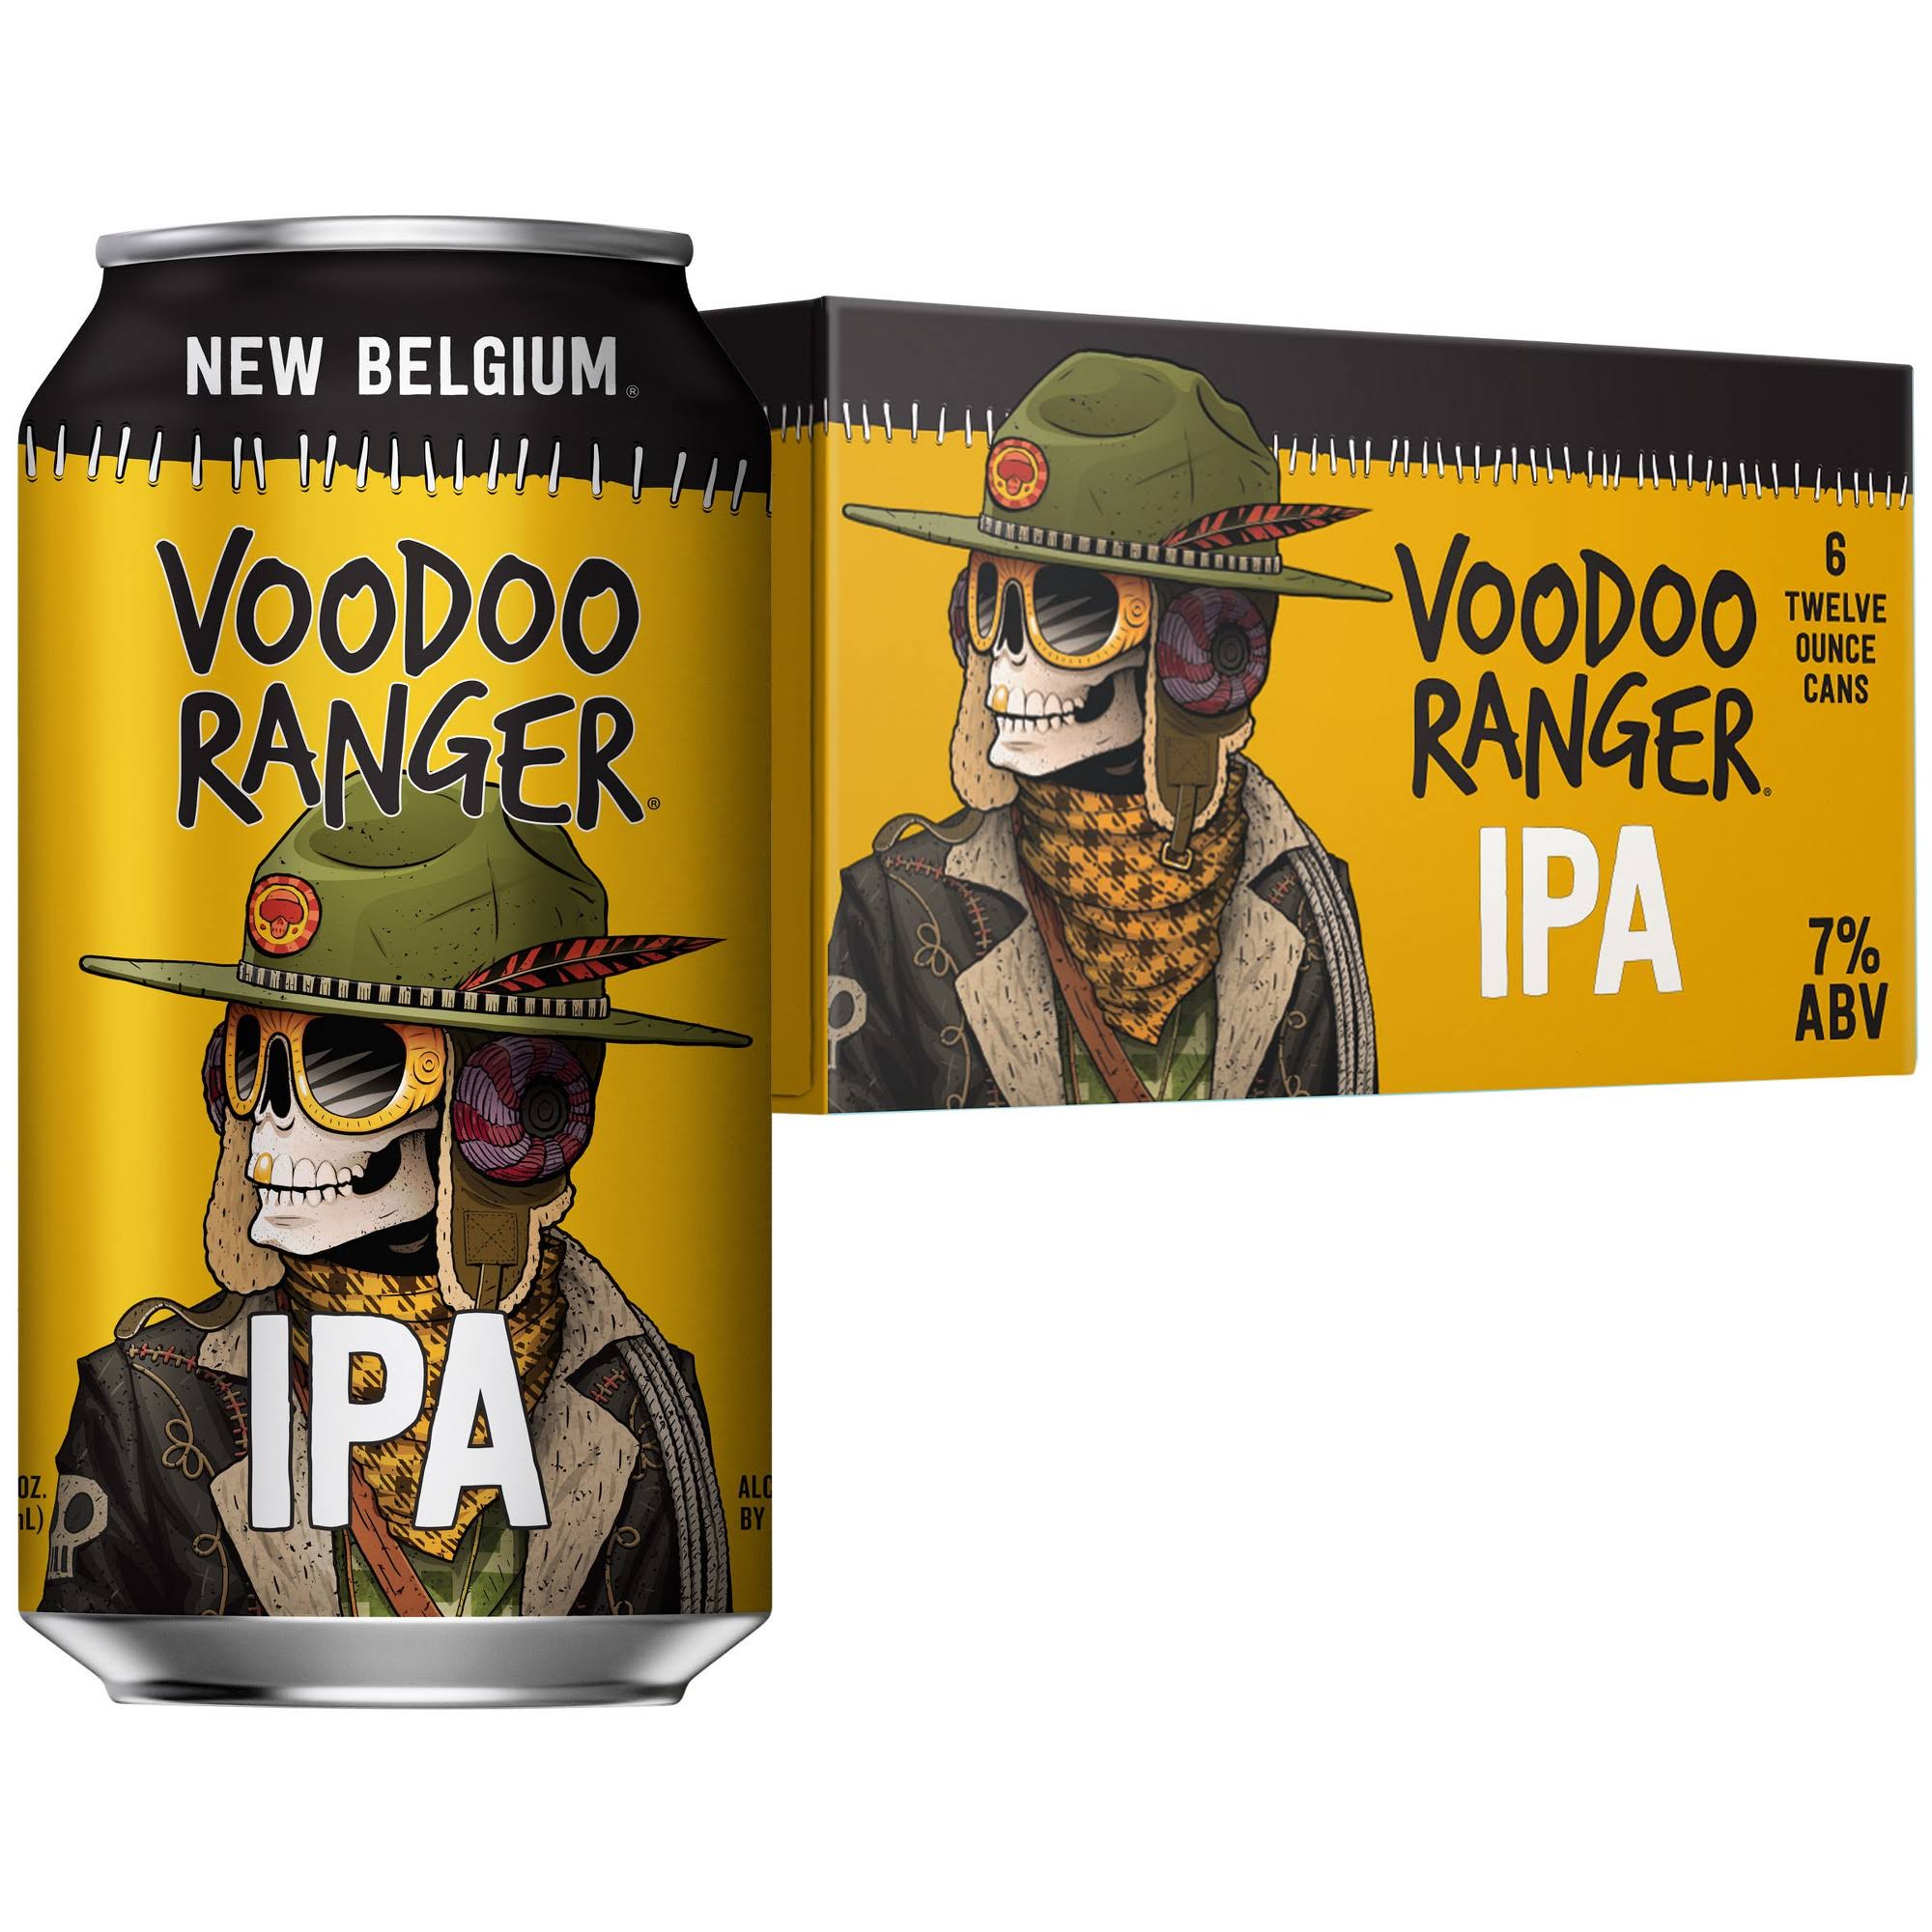 New Belgium Voodoo Ranger Beer, IPA - 6 pack, 12 oz cans